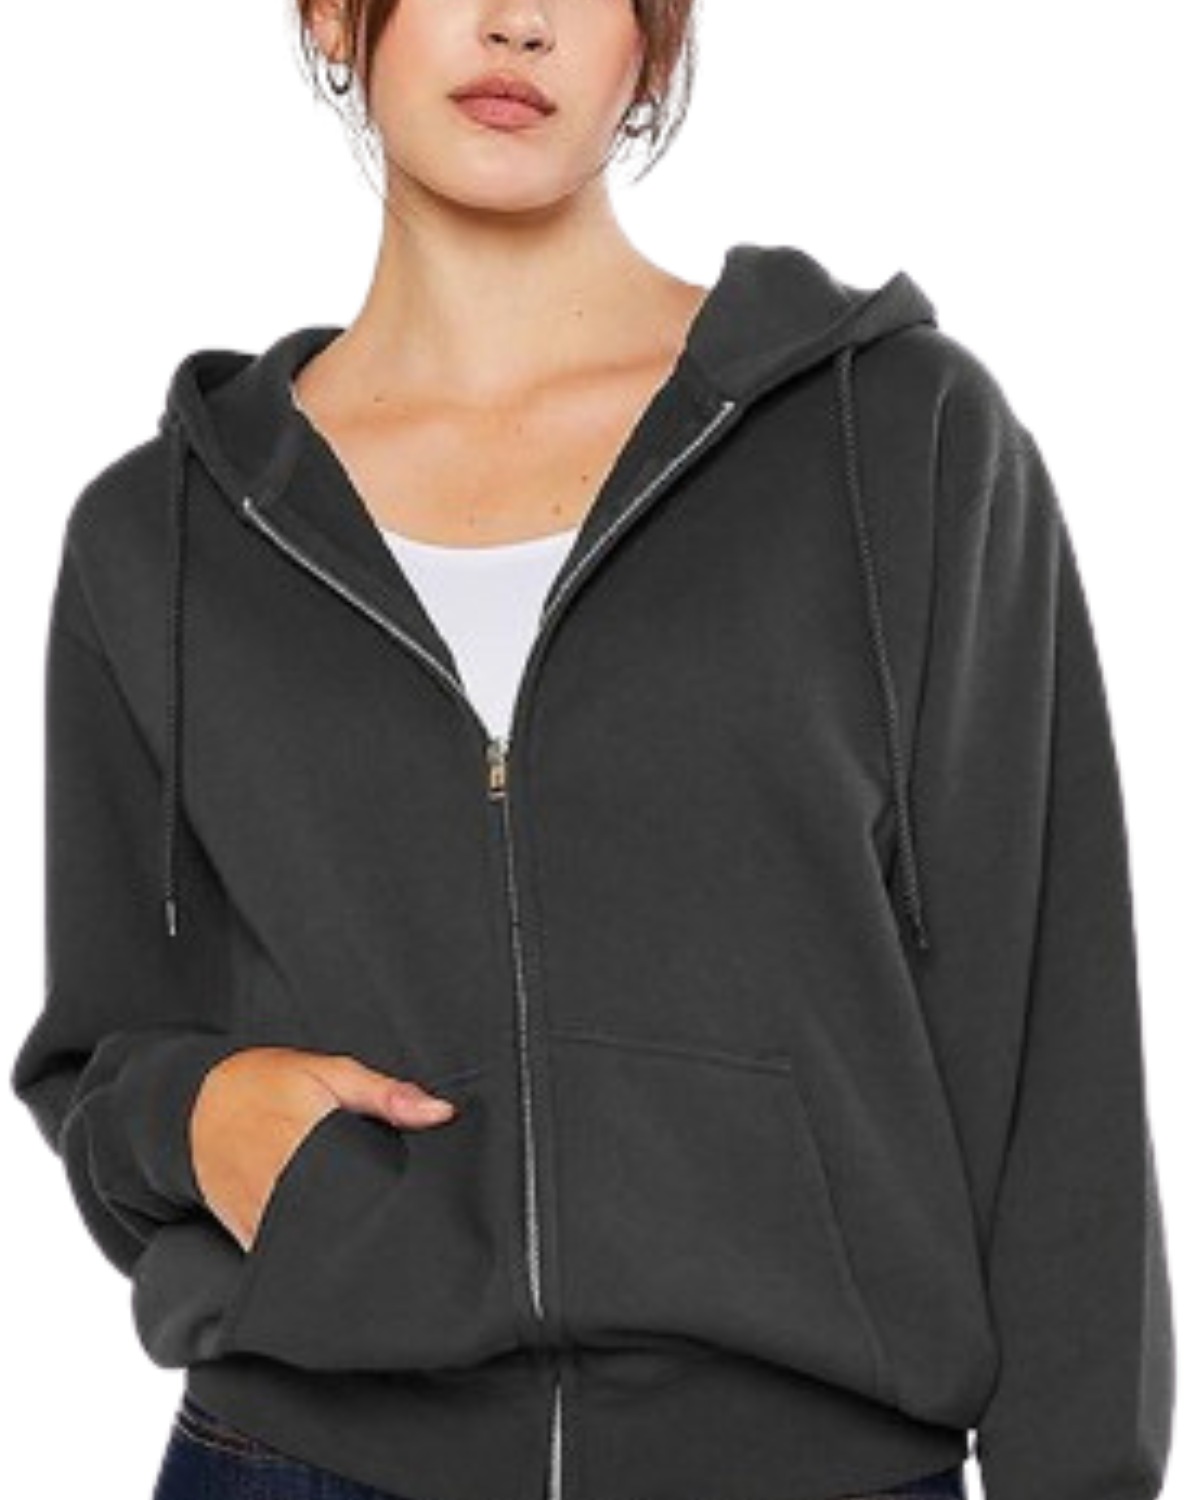 Model on a white backdrop wearing a women's oversized fleece zip up hooded sweater in charcoal grey